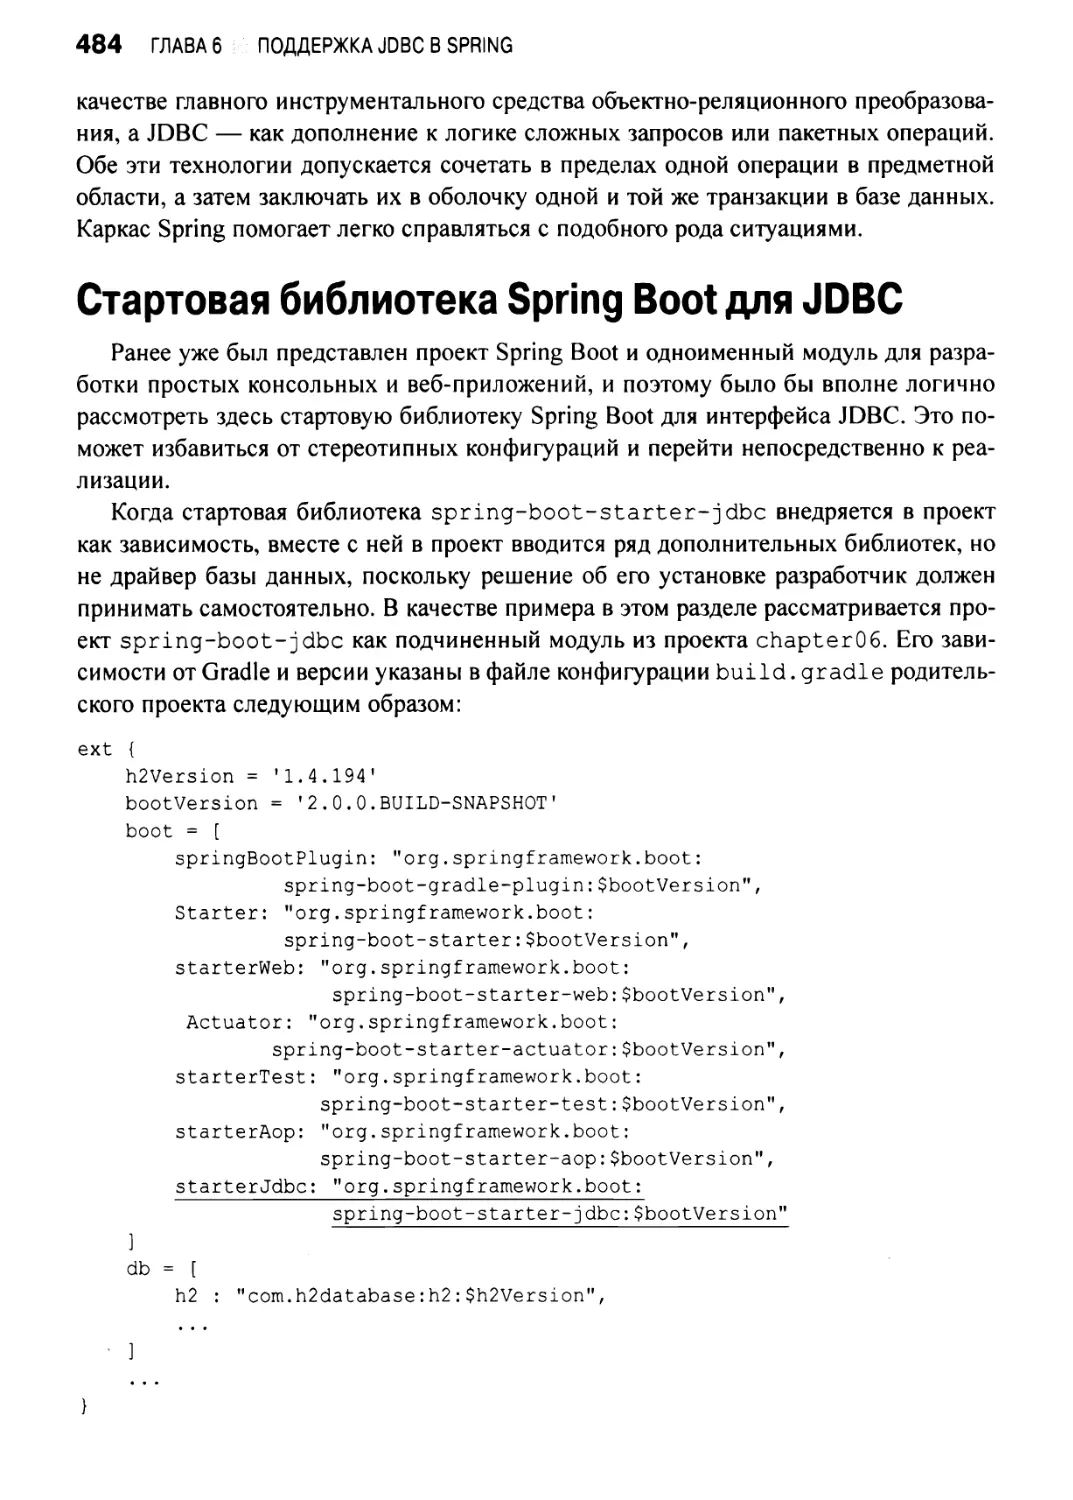 Стартовая библиотека Spring Boot для JDBC